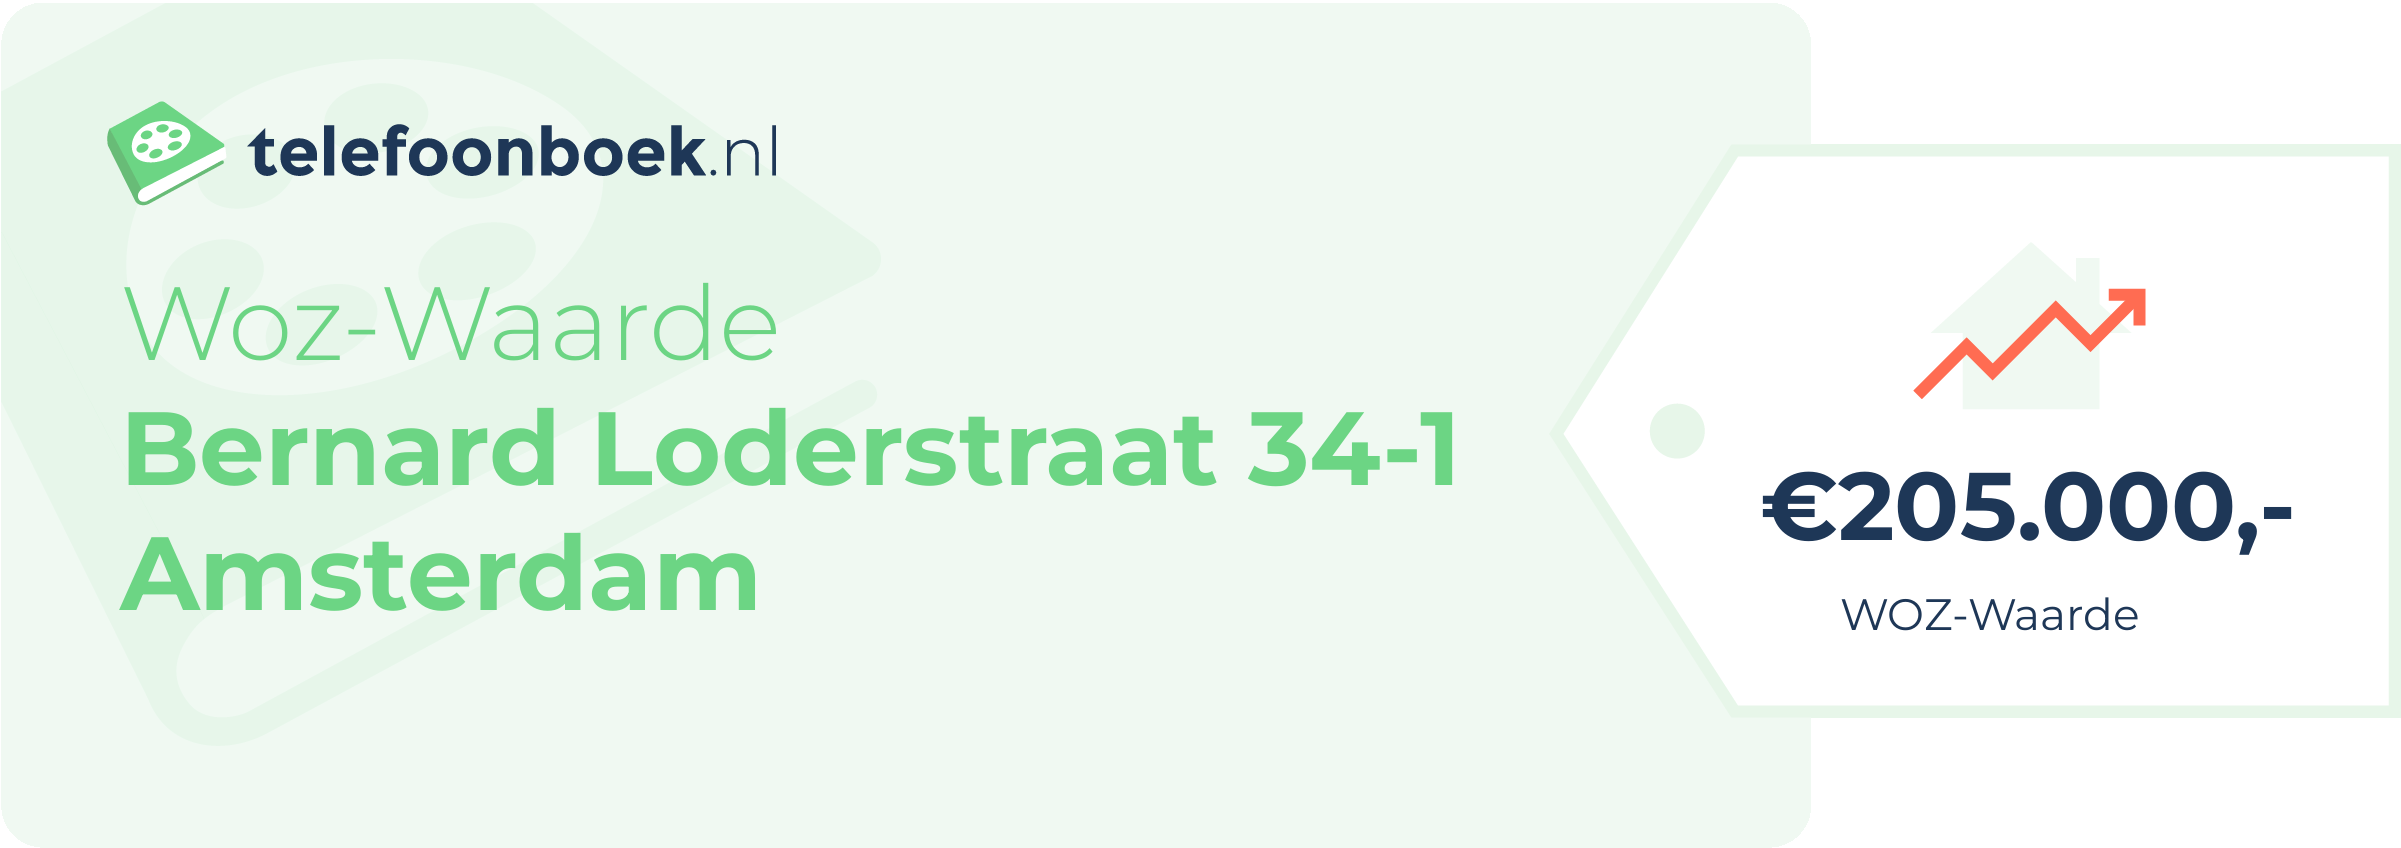 WOZ-waarde Bernard Loderstraat 34-1 Amsterdam